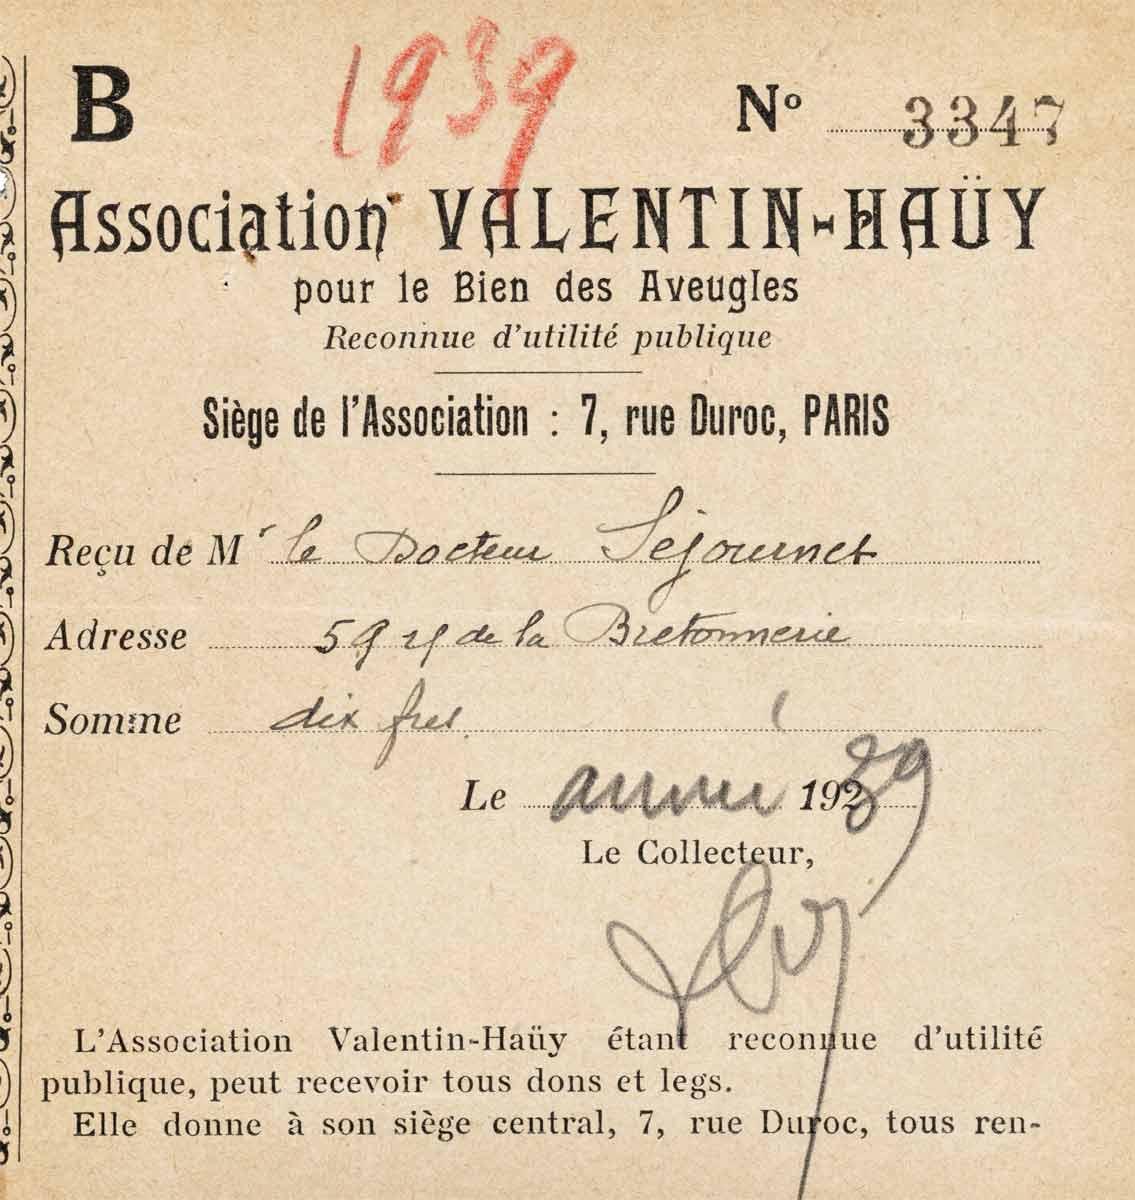 Carte de membre de l’association Valentin-Haüy de Jean Séjournet, médecin à Cléry-Saint-André, 1936.